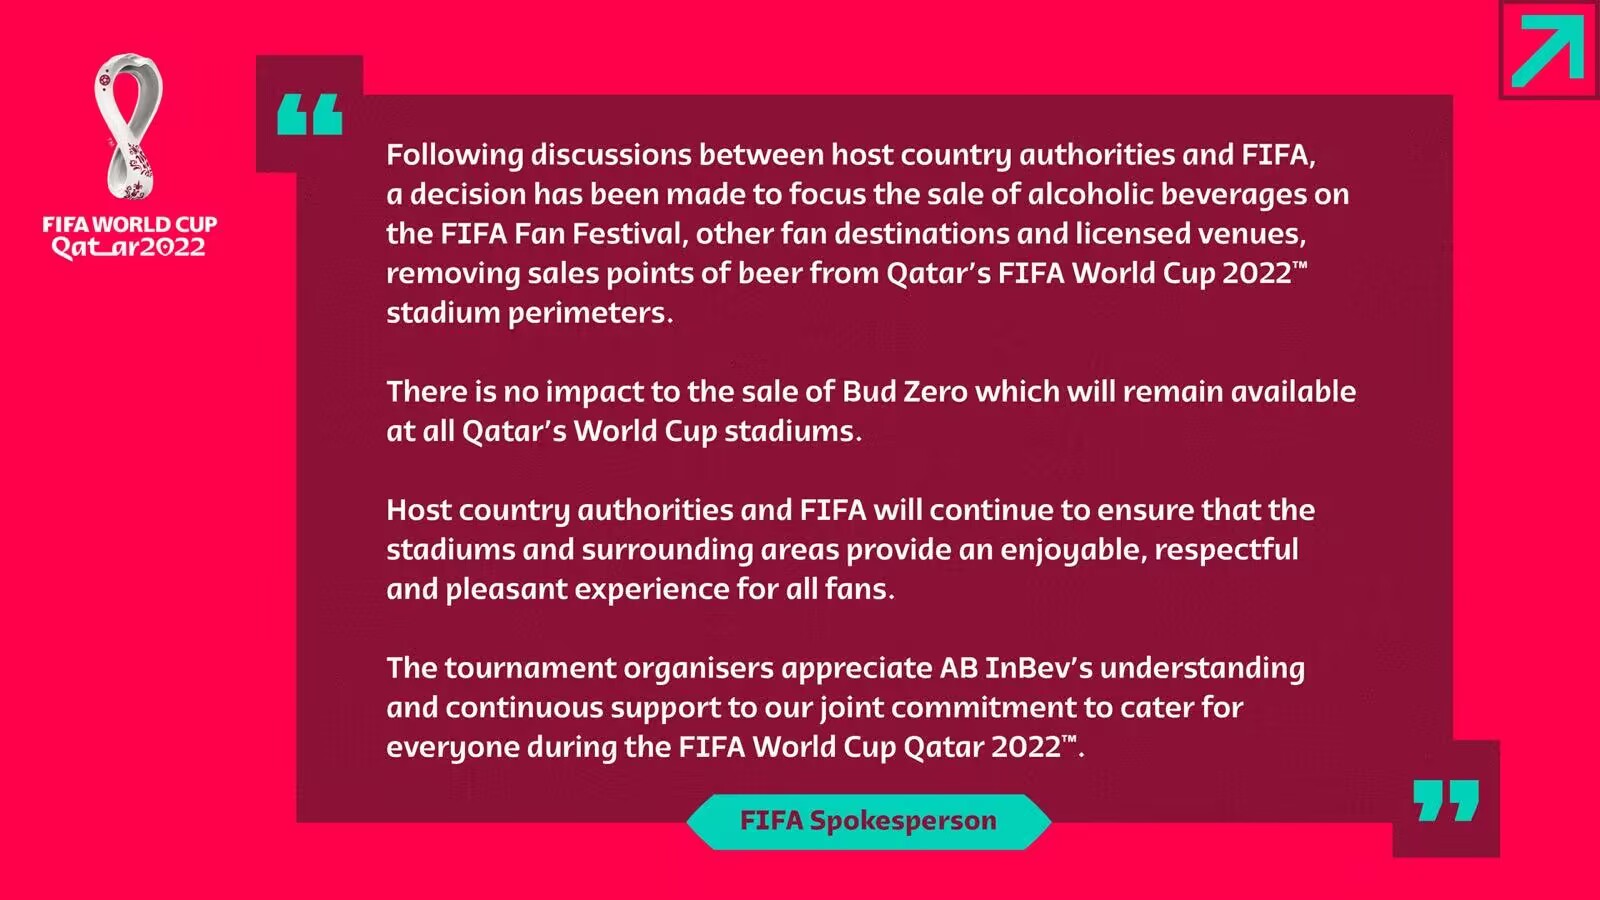 严格禁酒!官方:卡塔尔世界杯球场禁售啤酒